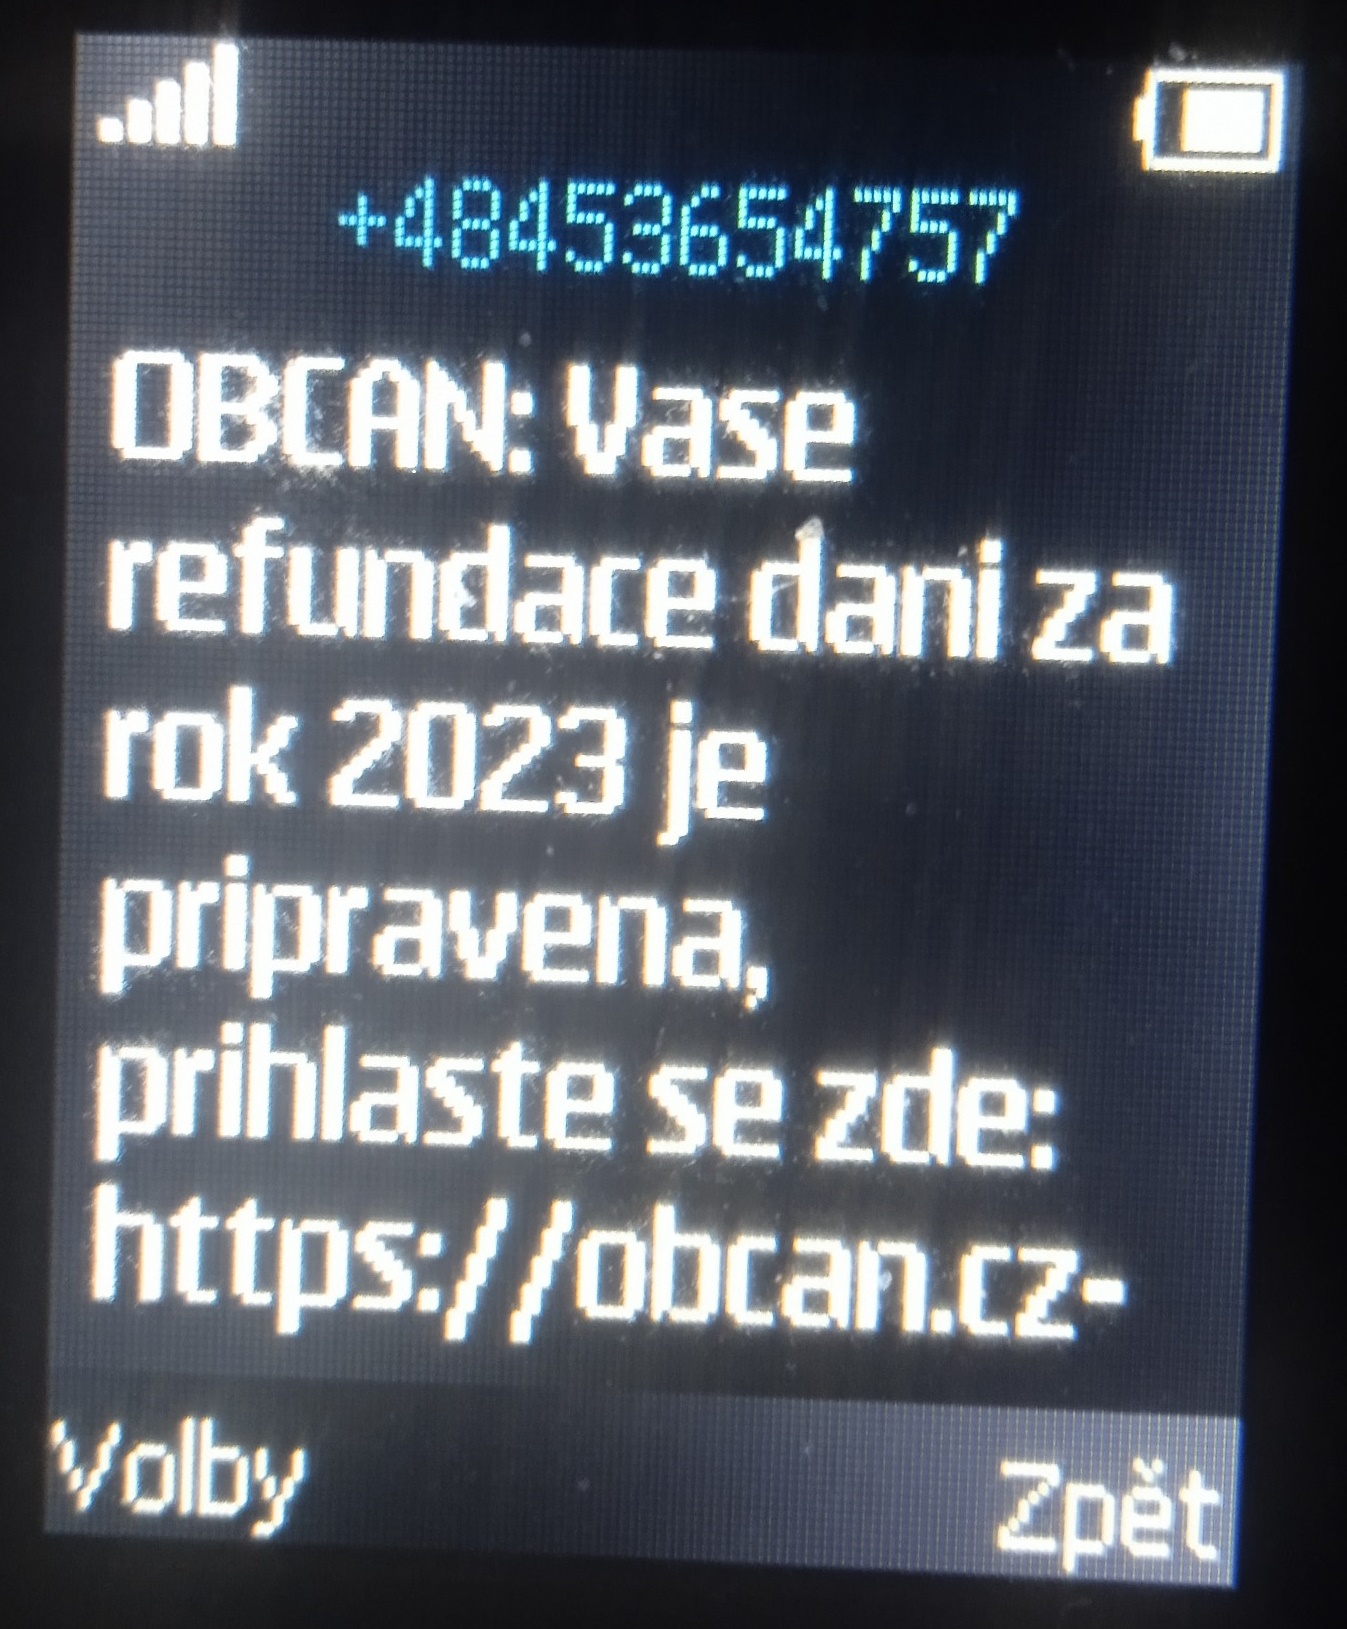 Vase refundace dani za rok 2023 je pripravena, prihlaste se zde: obcan.cz-gov-e.net abyste mohli uplatnit narok